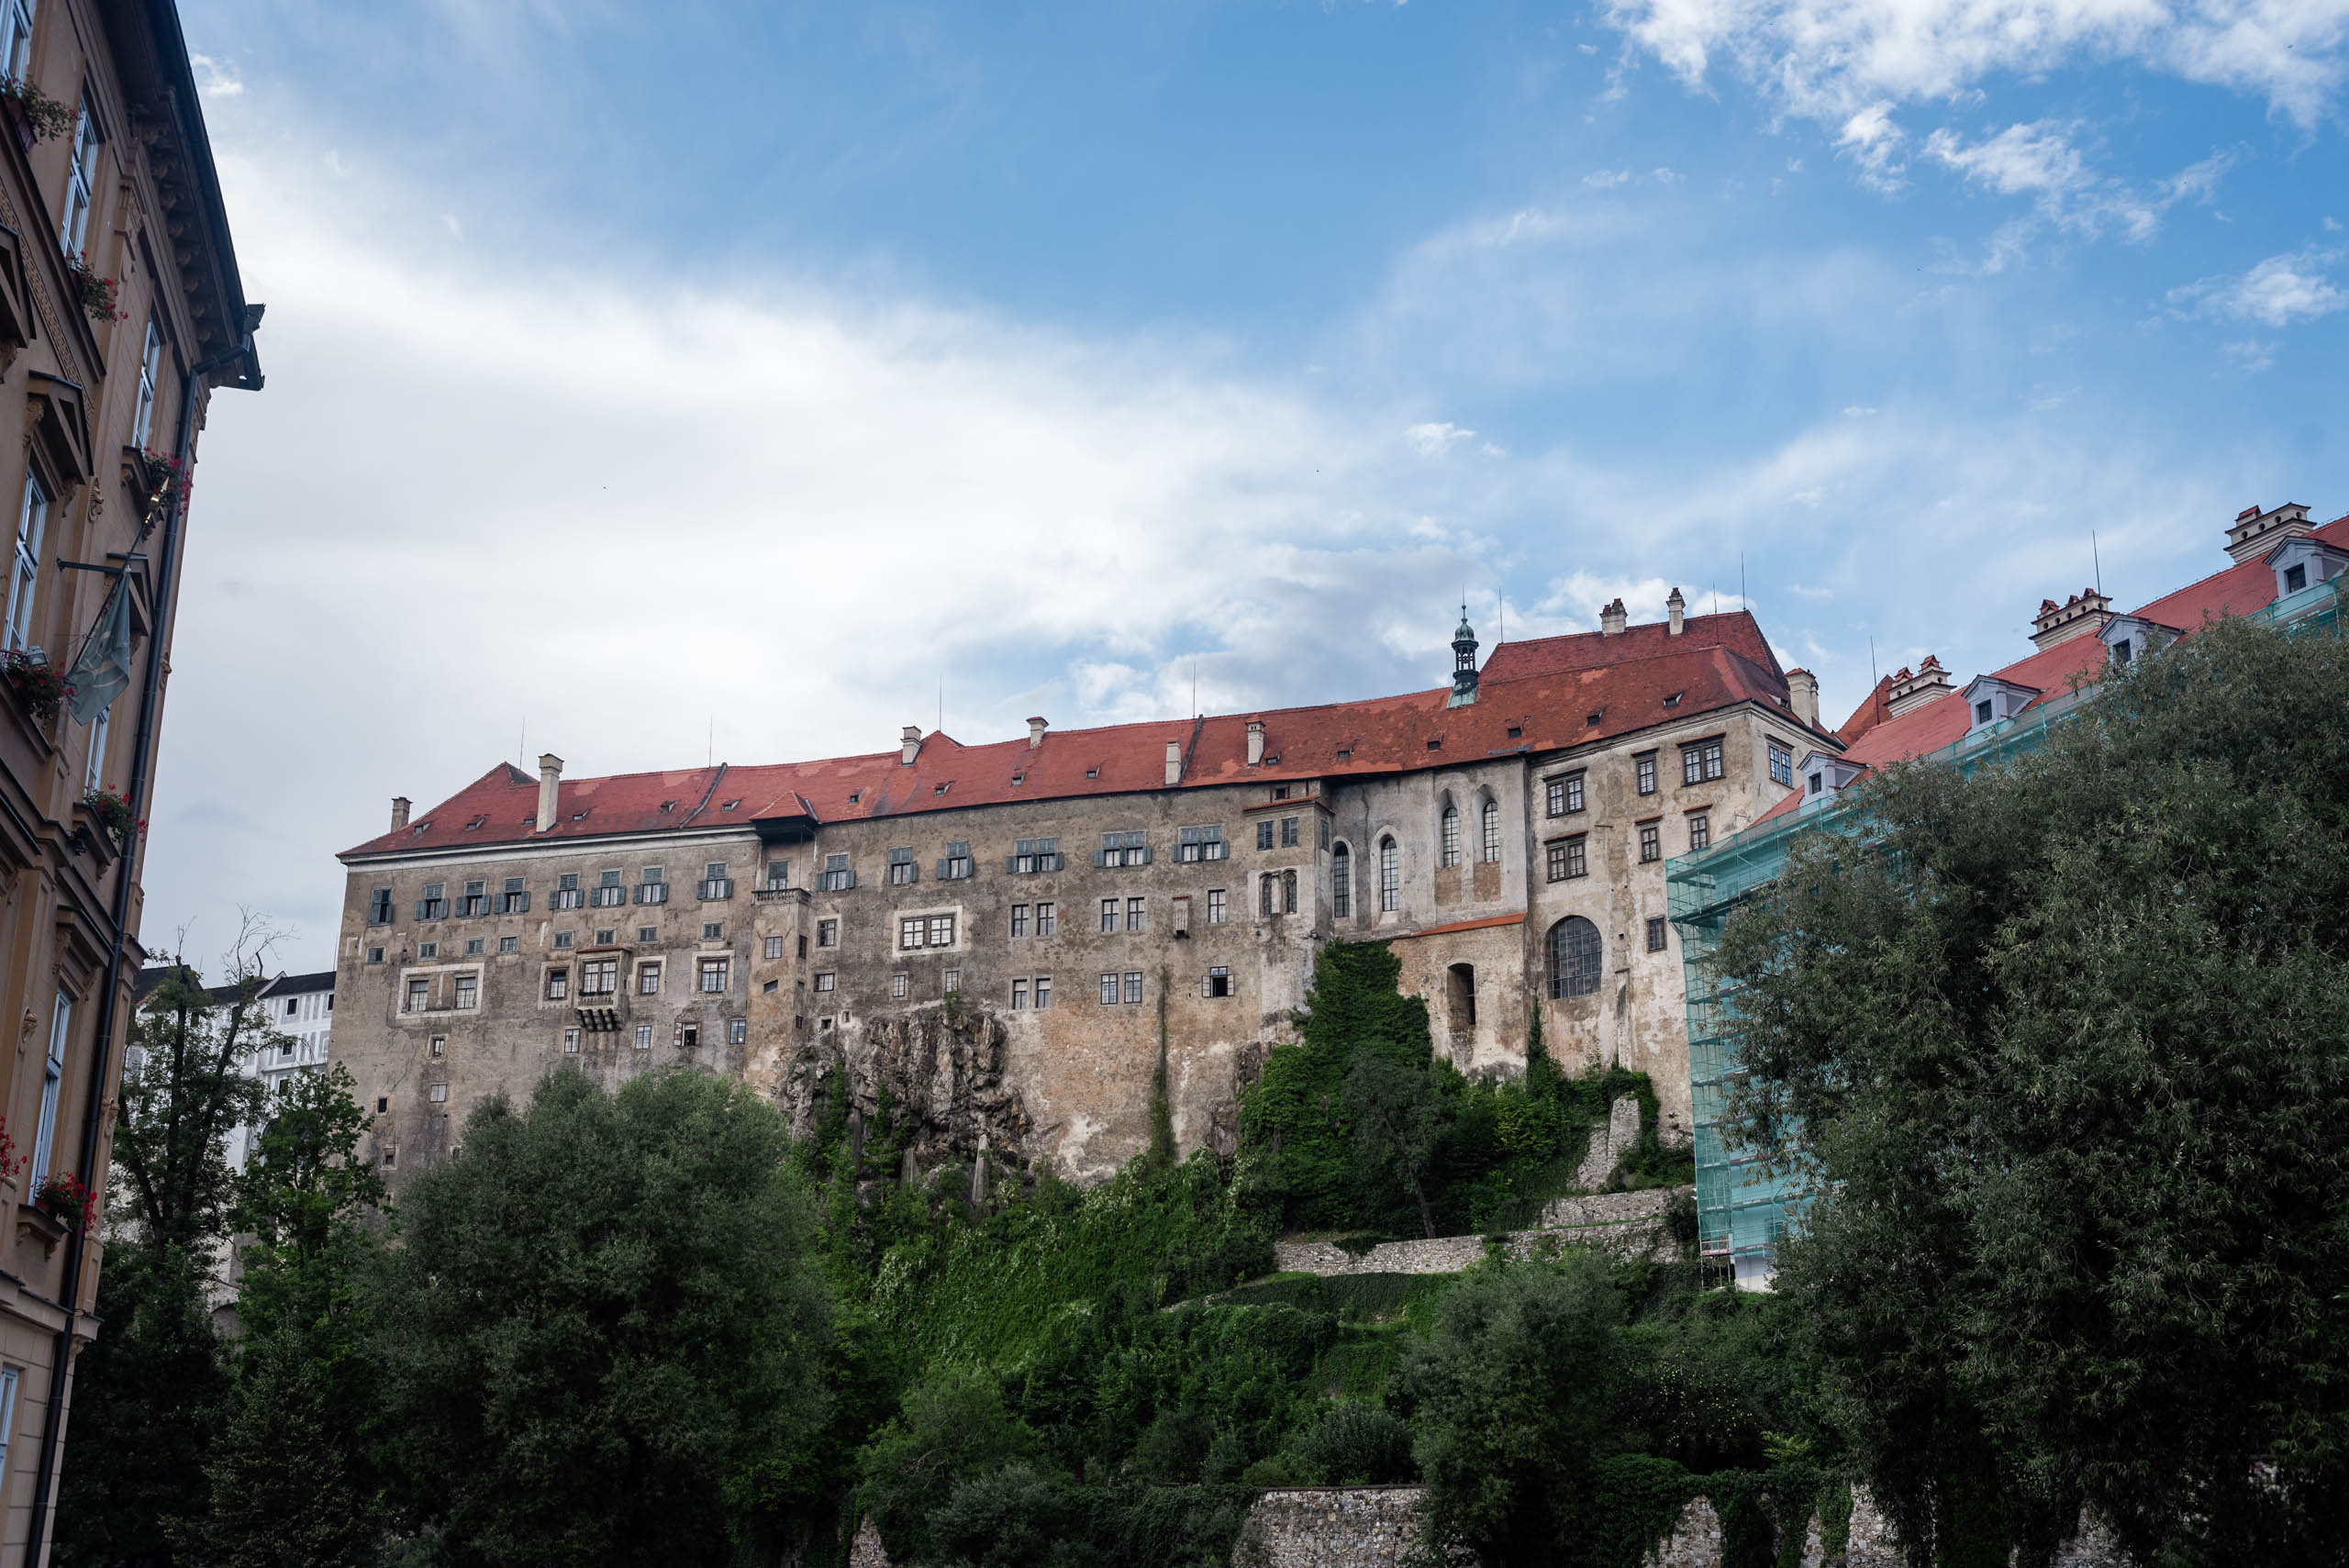 Zamek w Czeskim Krumlowie